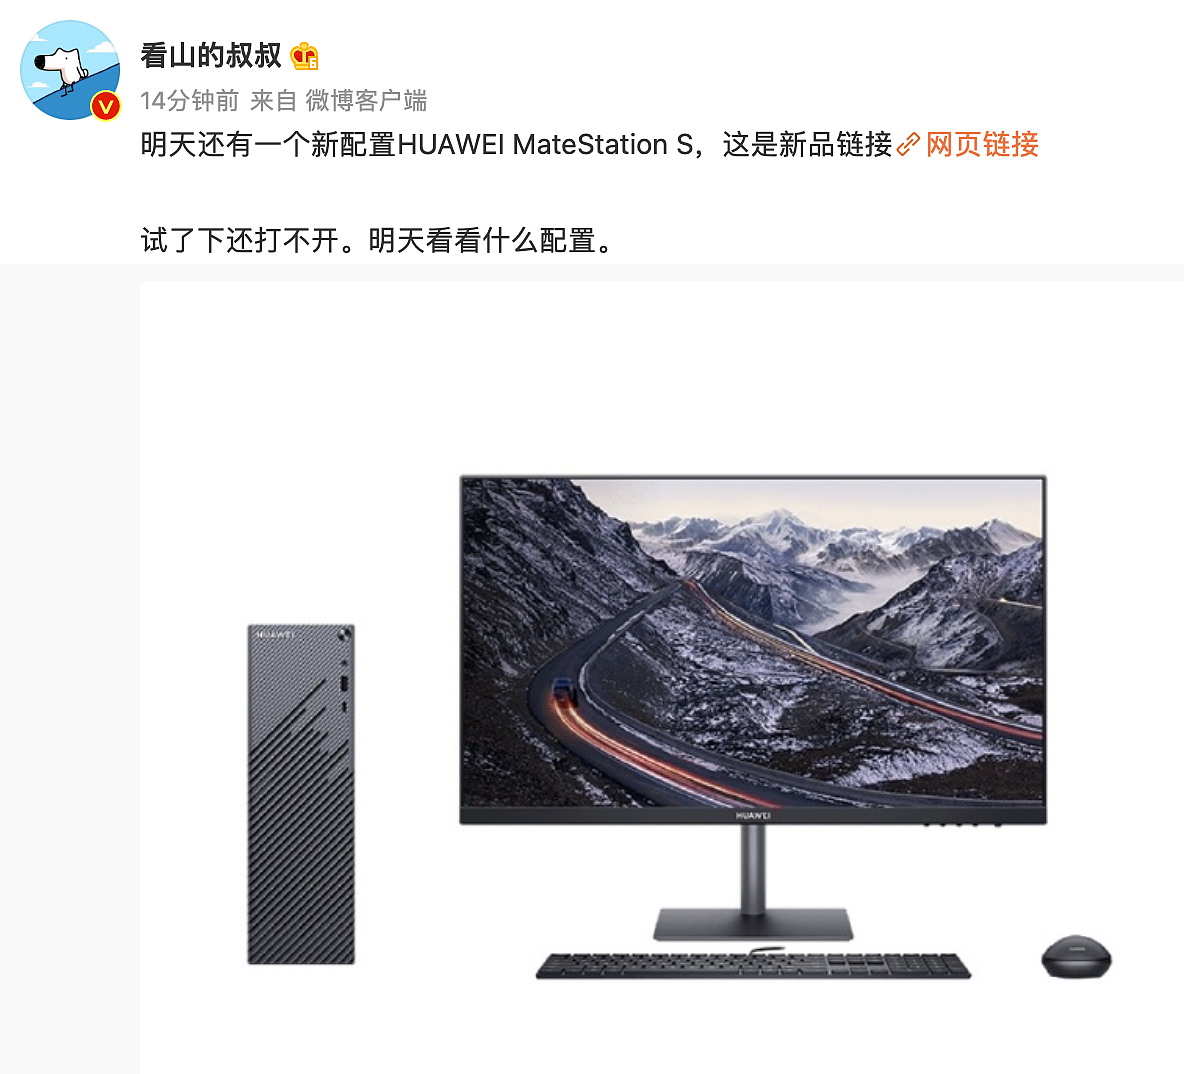 消息称华为明日发布新款 MateStation S 台式机，预计搭载锐龙 5000G - 1